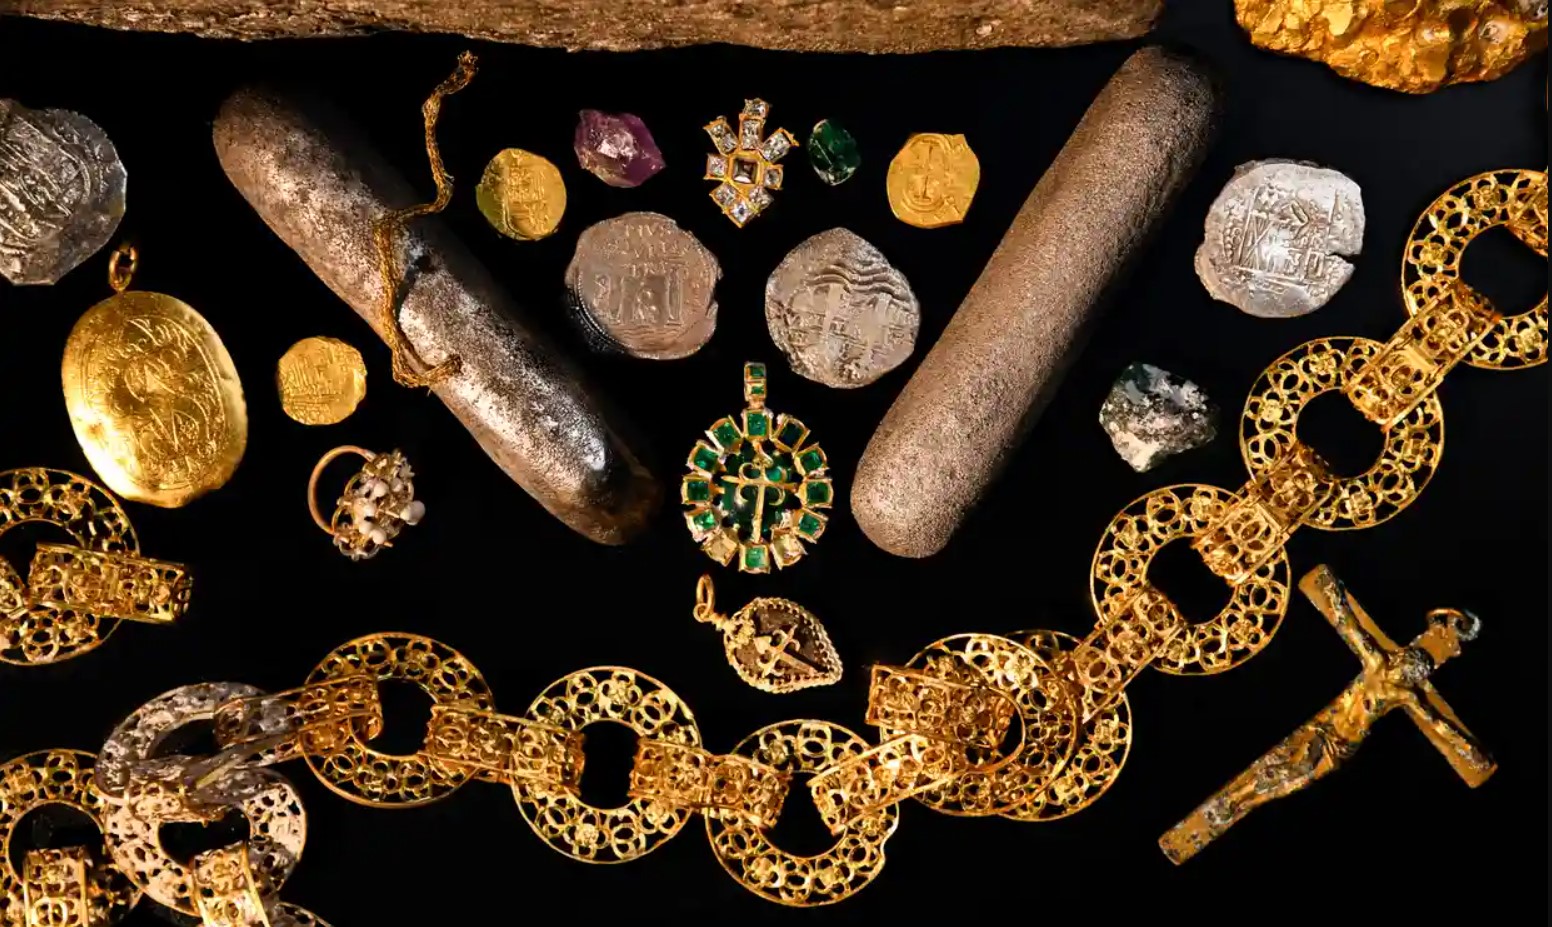 Neue Schätze der spanischen Galeone 366 Jahre nach dem Untergang